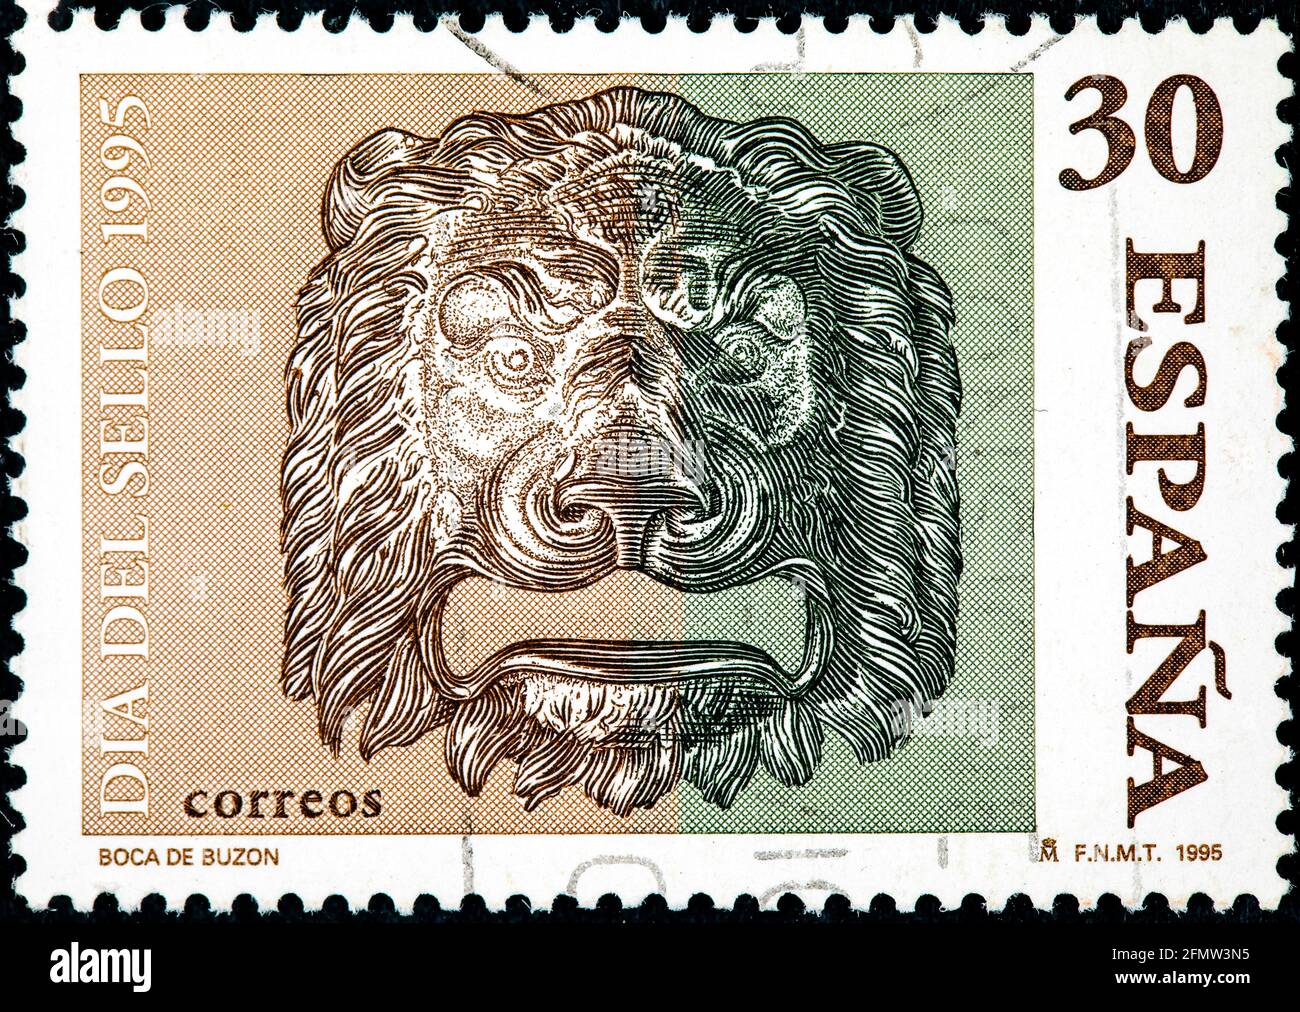 Espagne - Circa 1995: Un timbre imprimé en Espagne montre la bouche d'une boîte aux lettres très typique, vers 1995 Banque D'Images